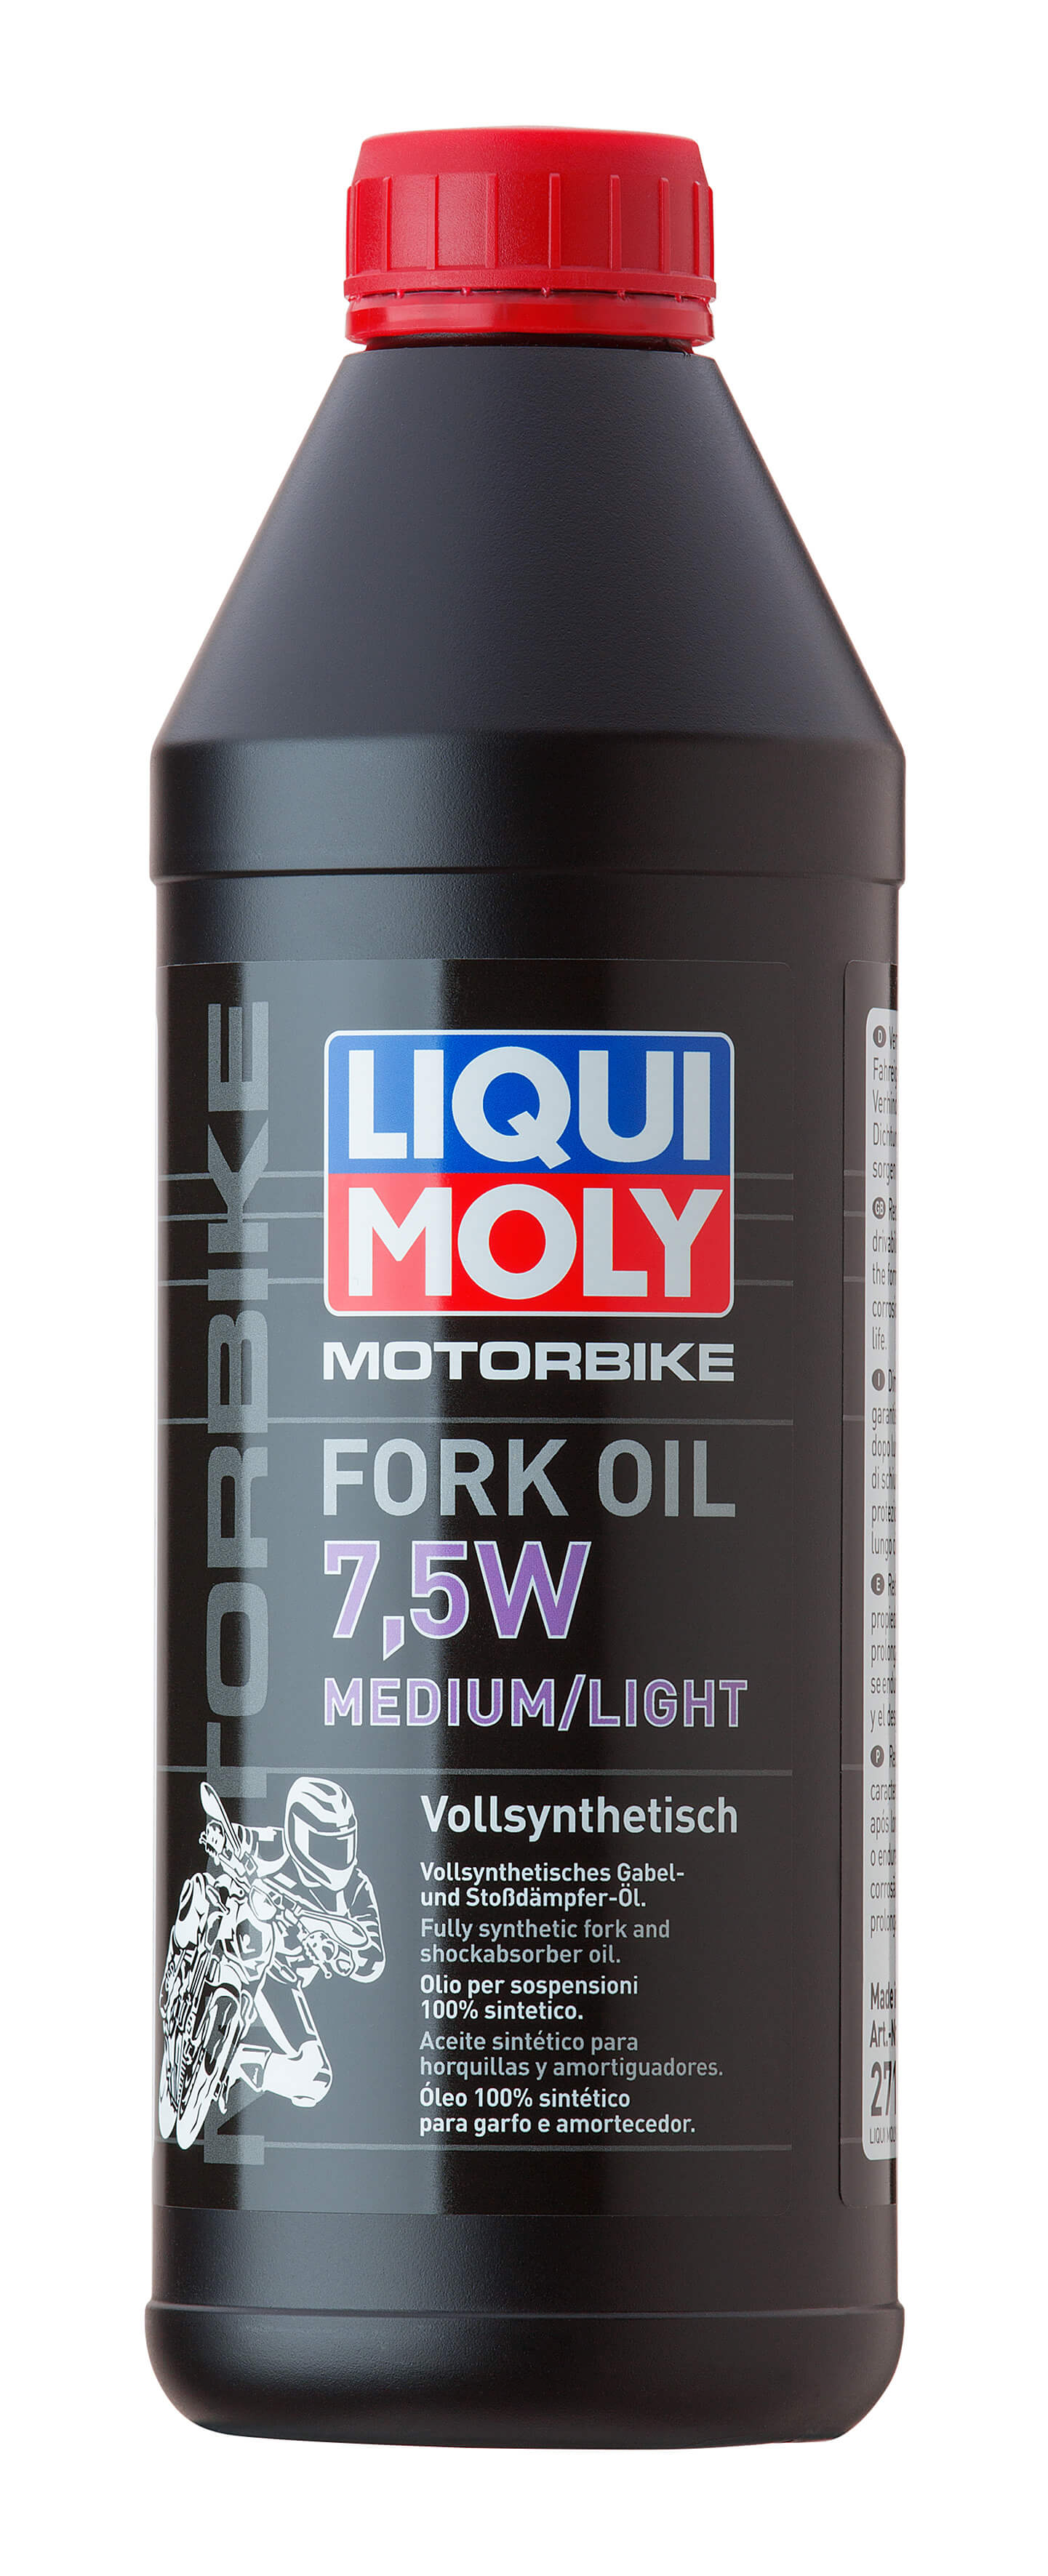 Масло для вилок и амортизаторов 7,5W (синтетическое) Motorbike Fork Oil Medium/Light 7,5W  1L